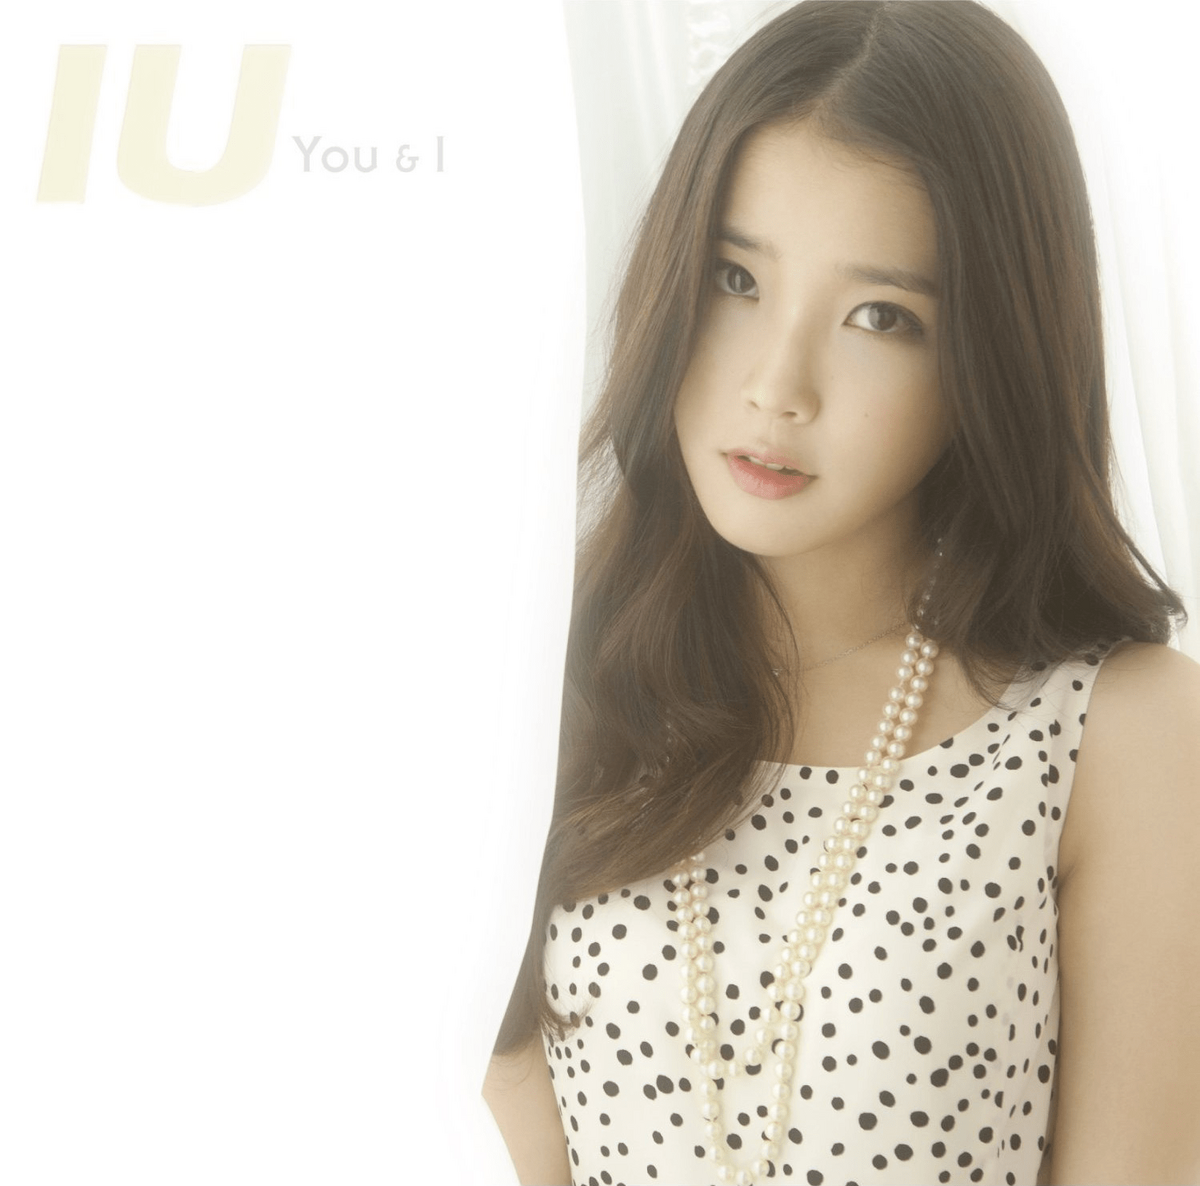 You & I (IU) | Kpop Wiki | Fandom